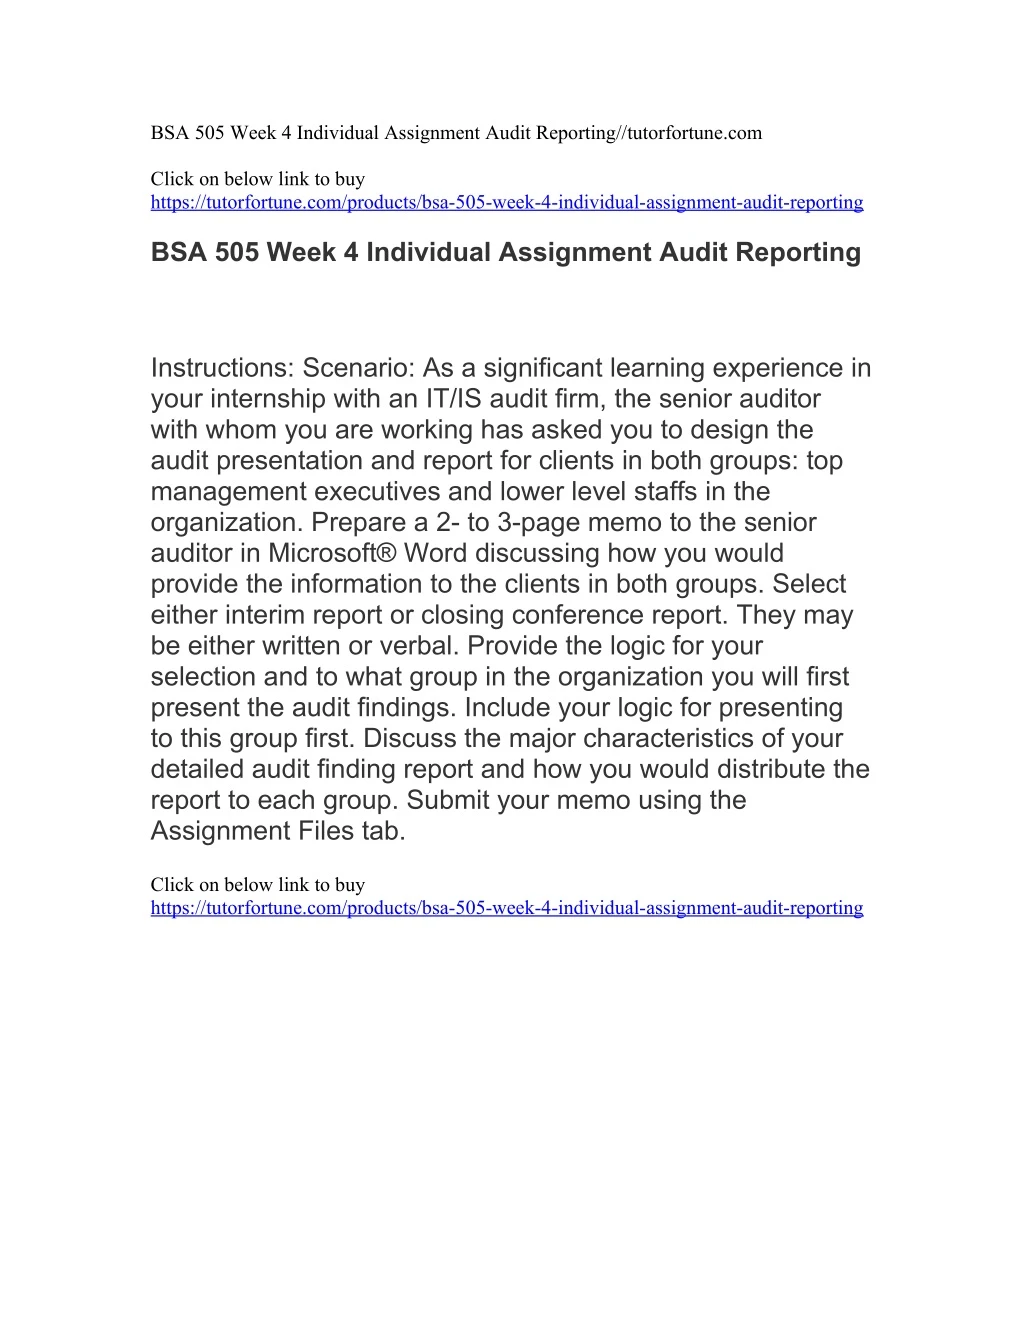 bsa 505 week 4 individual assignment audit